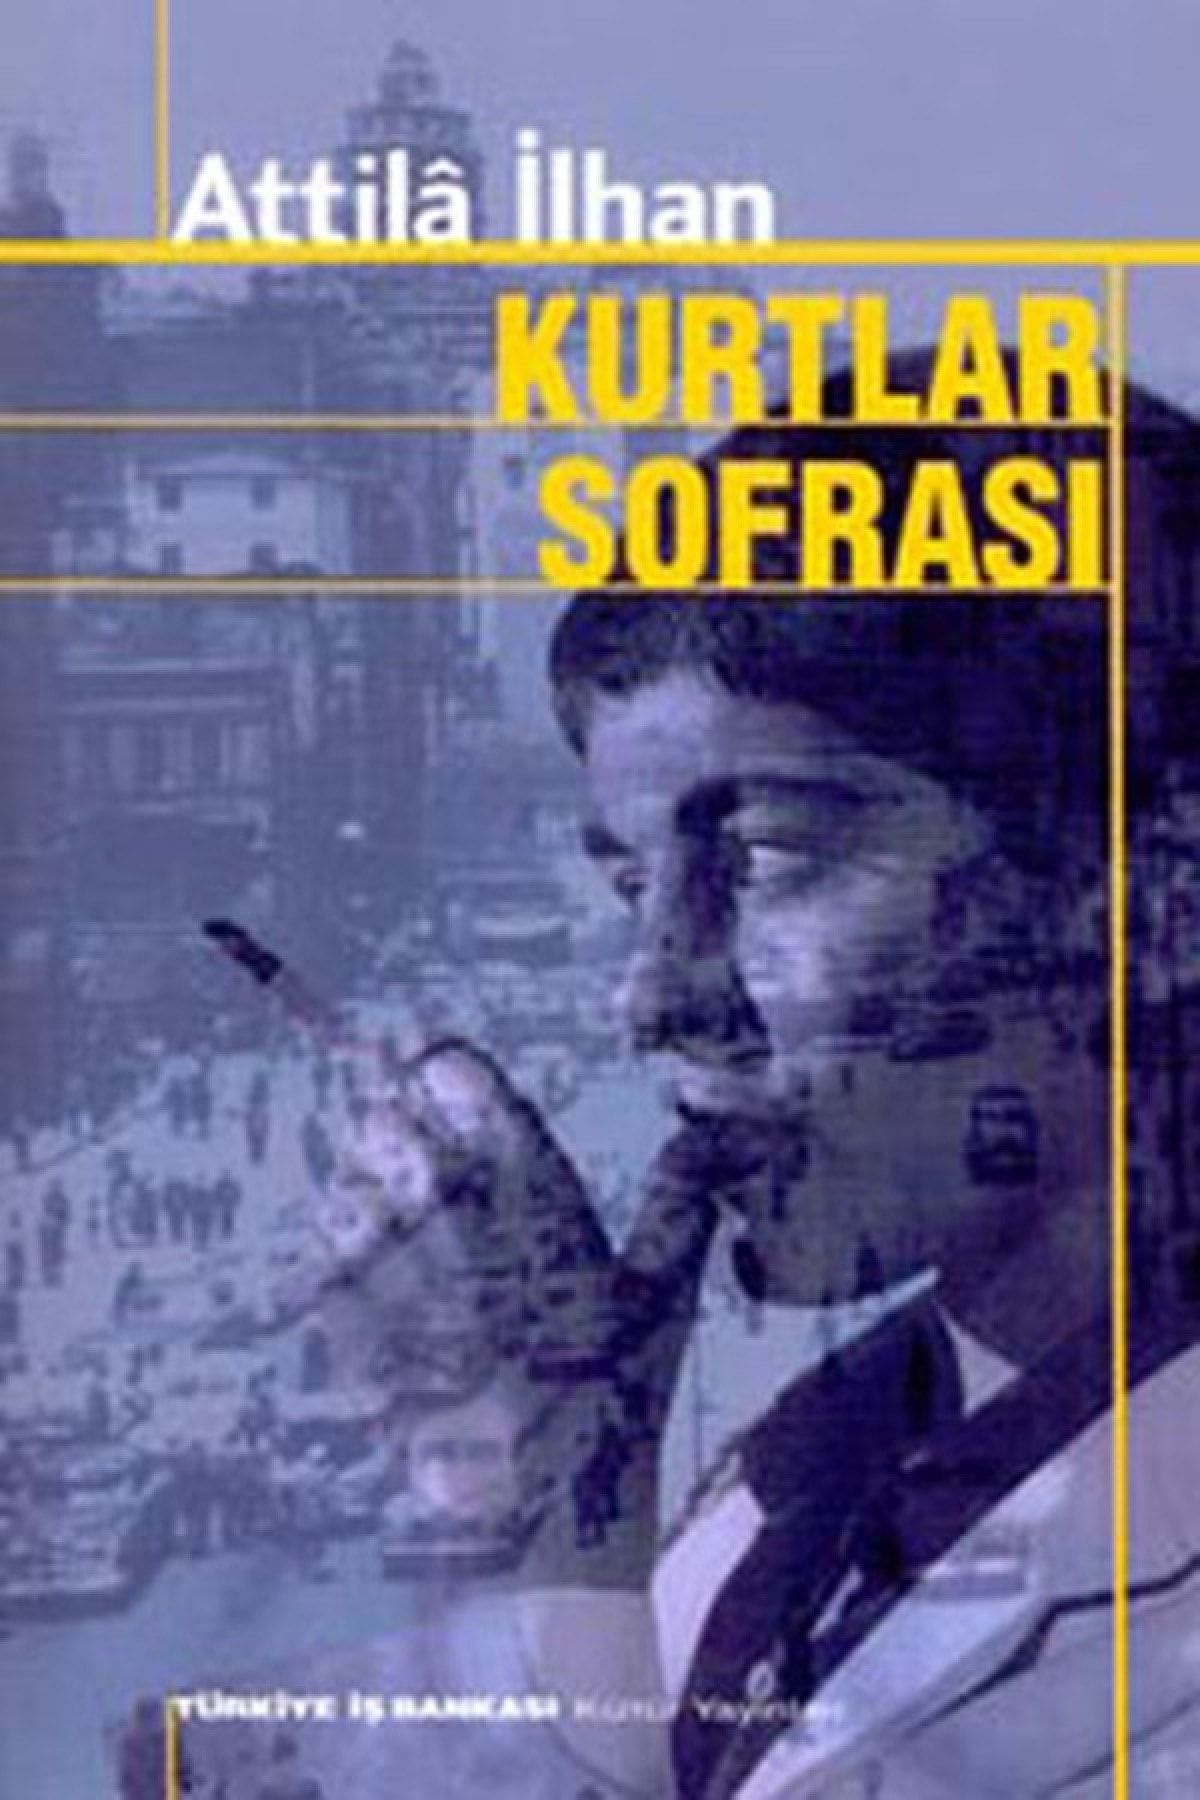 Türkiye İş Bankası Kültür Yayınları Kurtlar Sofrası - Attila Ilhan